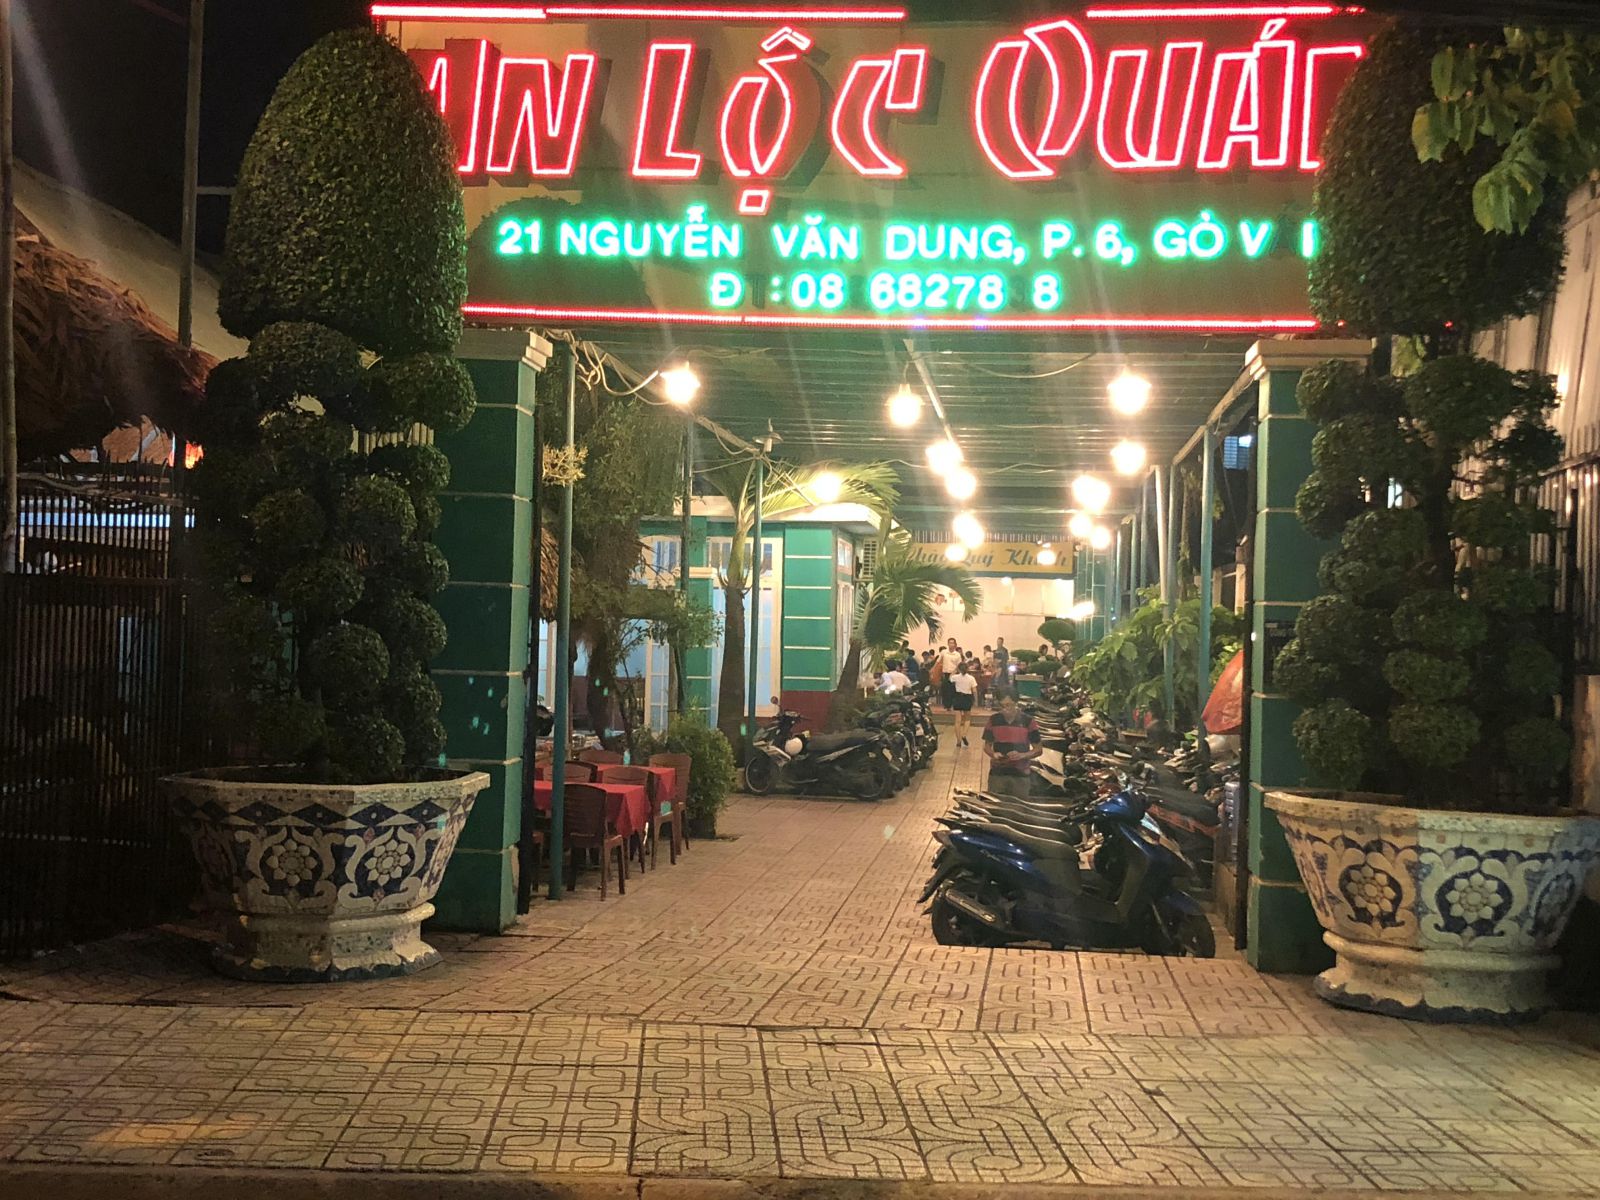 Nhà hàng heo tộc An Lộc